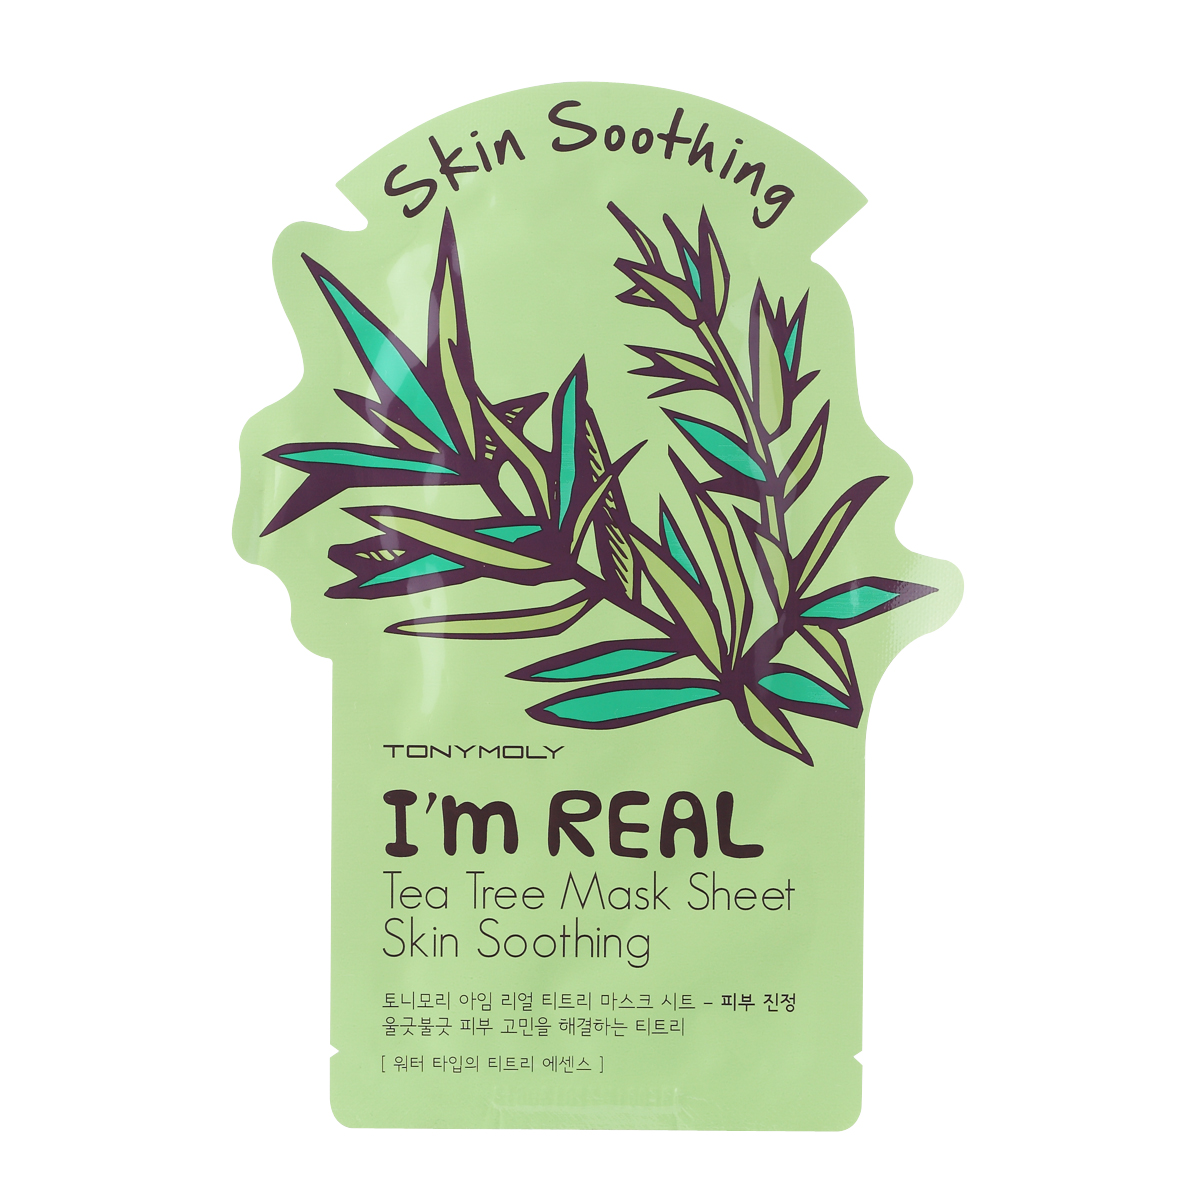 заказать и купить TonyMoly Тканевая маска с экстрактом чайного дерева I'm Real Tea Tree Mask Sheet, 21 мл